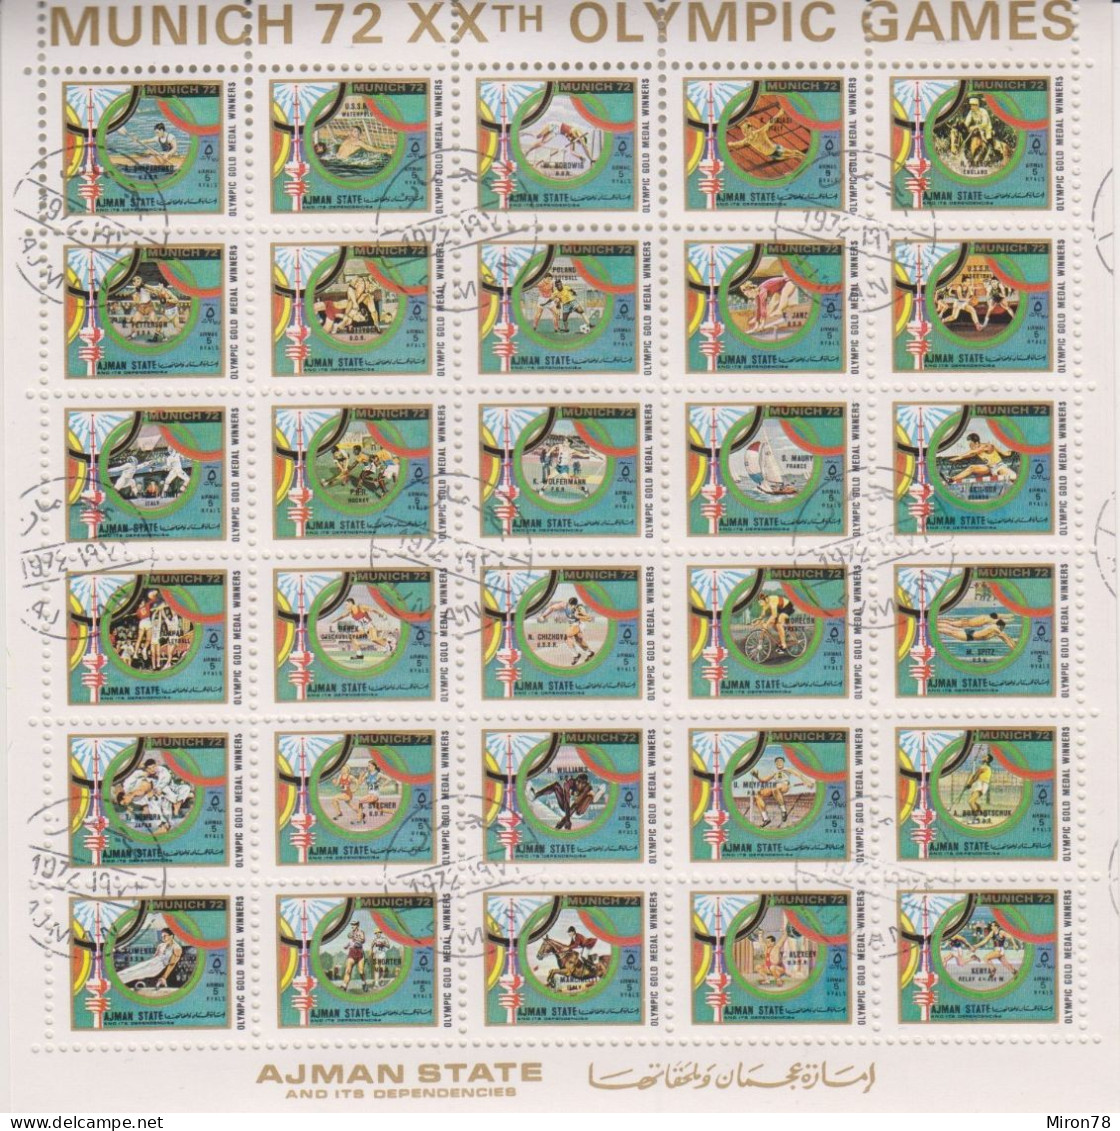 AJMAN OLYMPIC GAMES MUNICH 1972 #1605-34 SH USED (MNH-MICHEL 150 EURO!!!) - Summer 1972: Munich